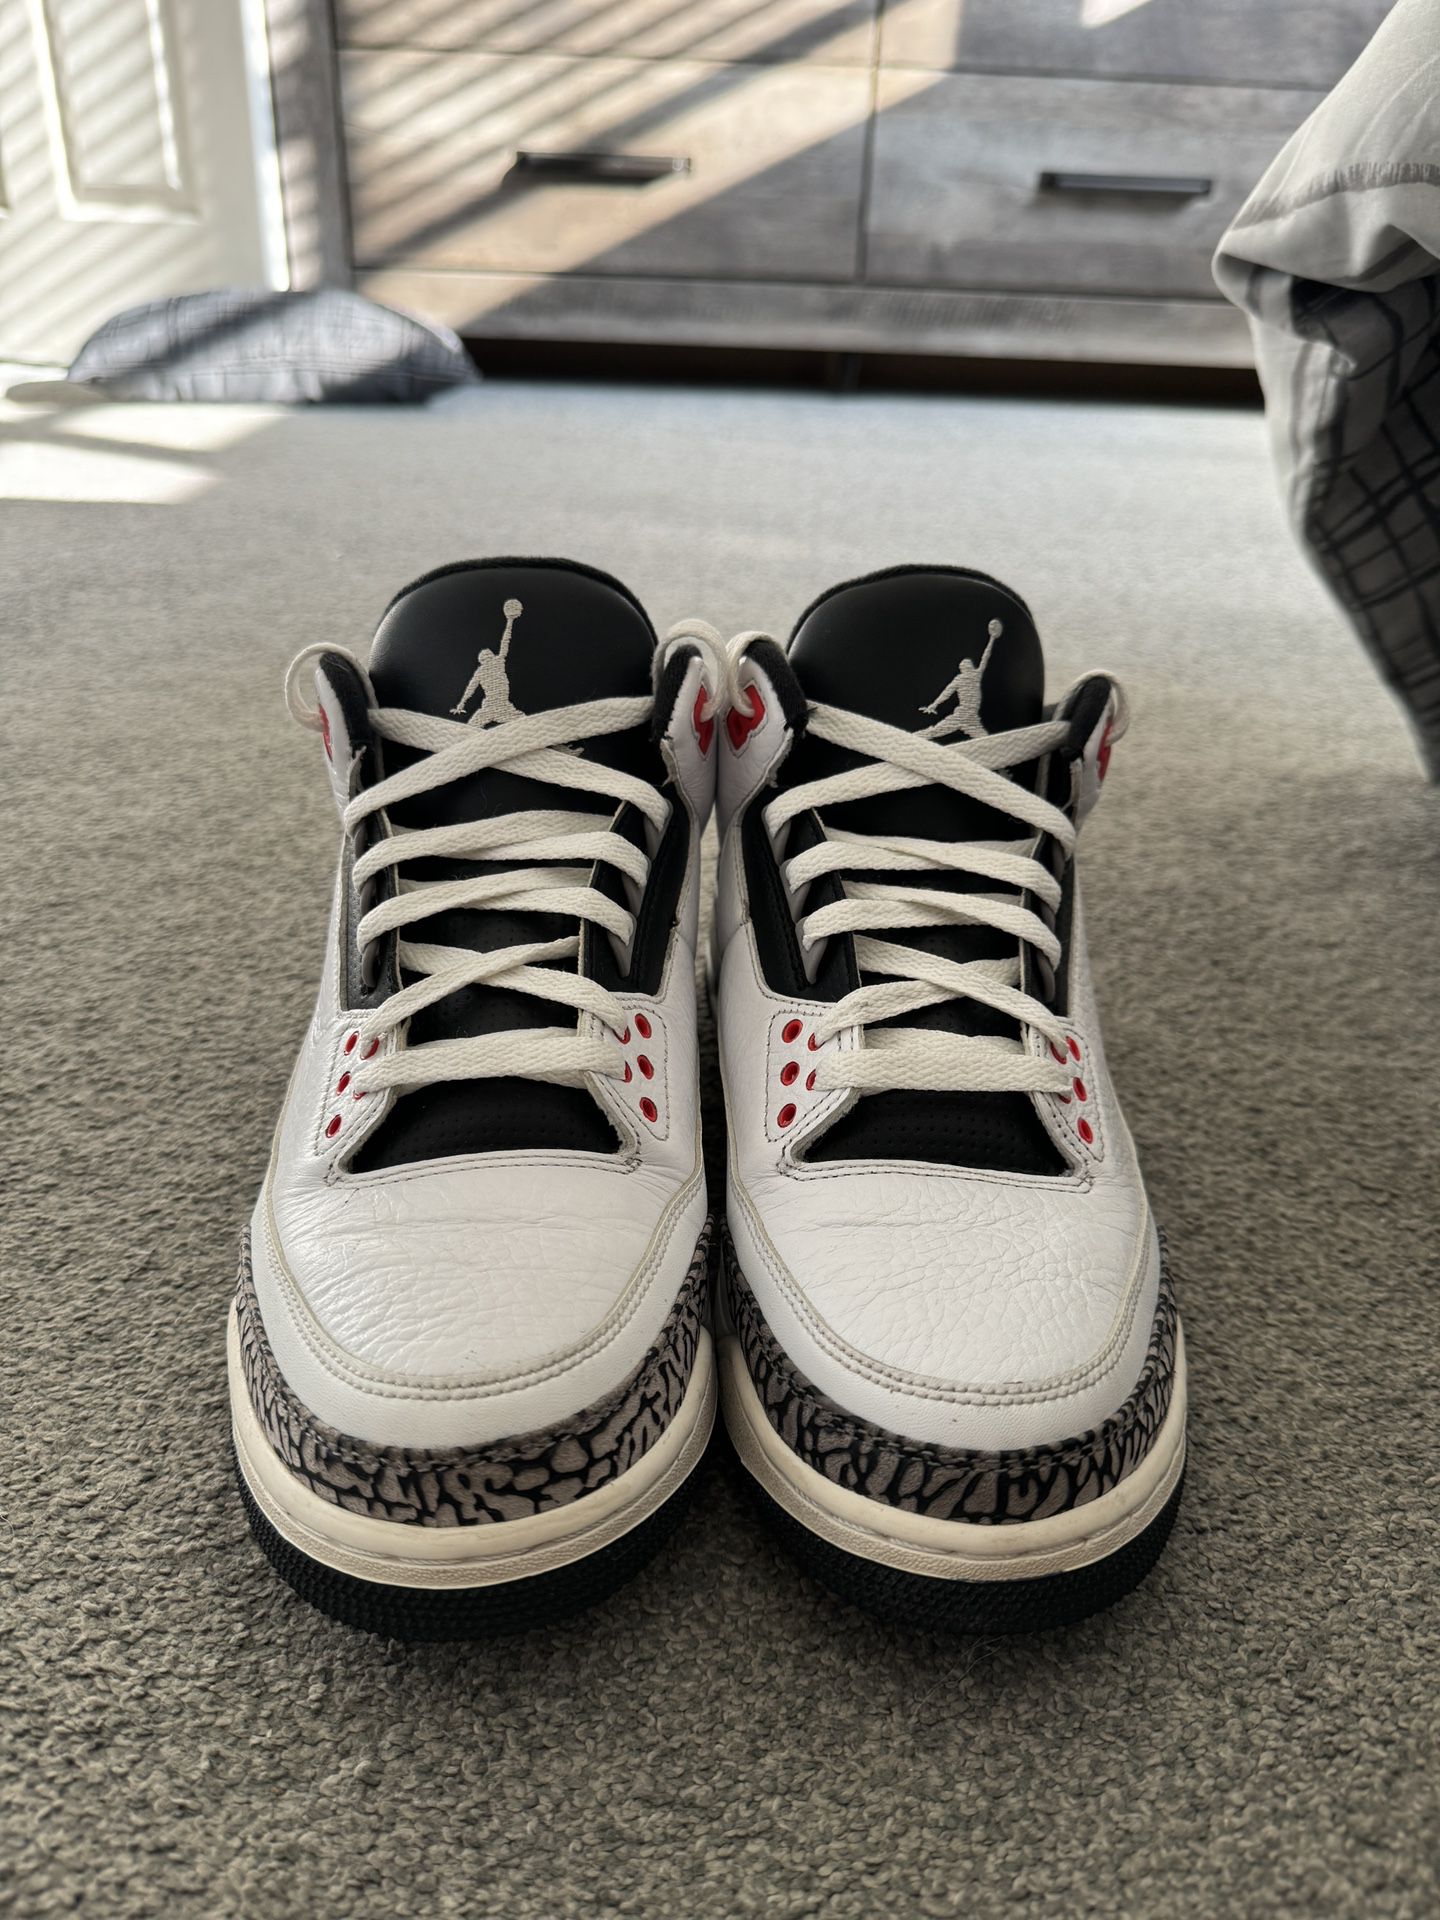 Air Jordan 3 Infrared (2014)(No Box)